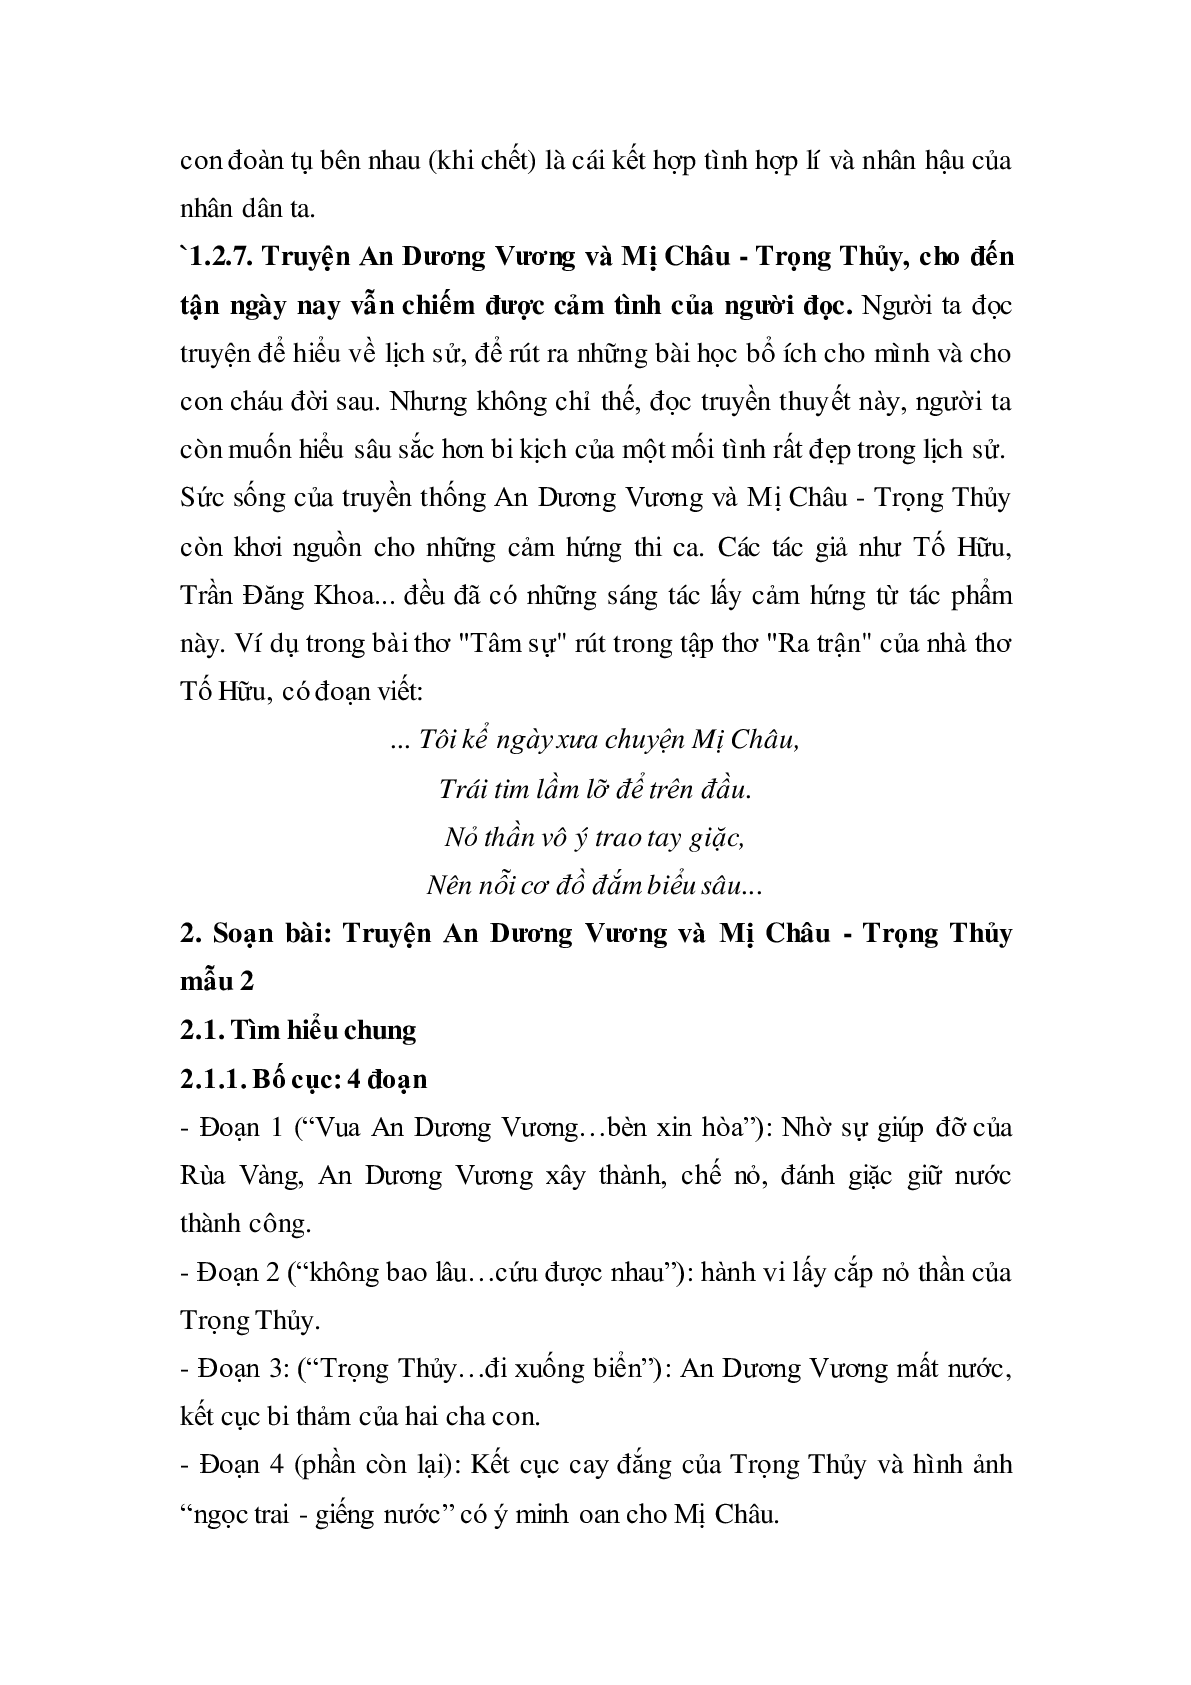 Soạn bài Truyện An Dương Vương và Mị Châu - Trọng Thủy - ngắn nhất Soạn văn 10 (trang 5)